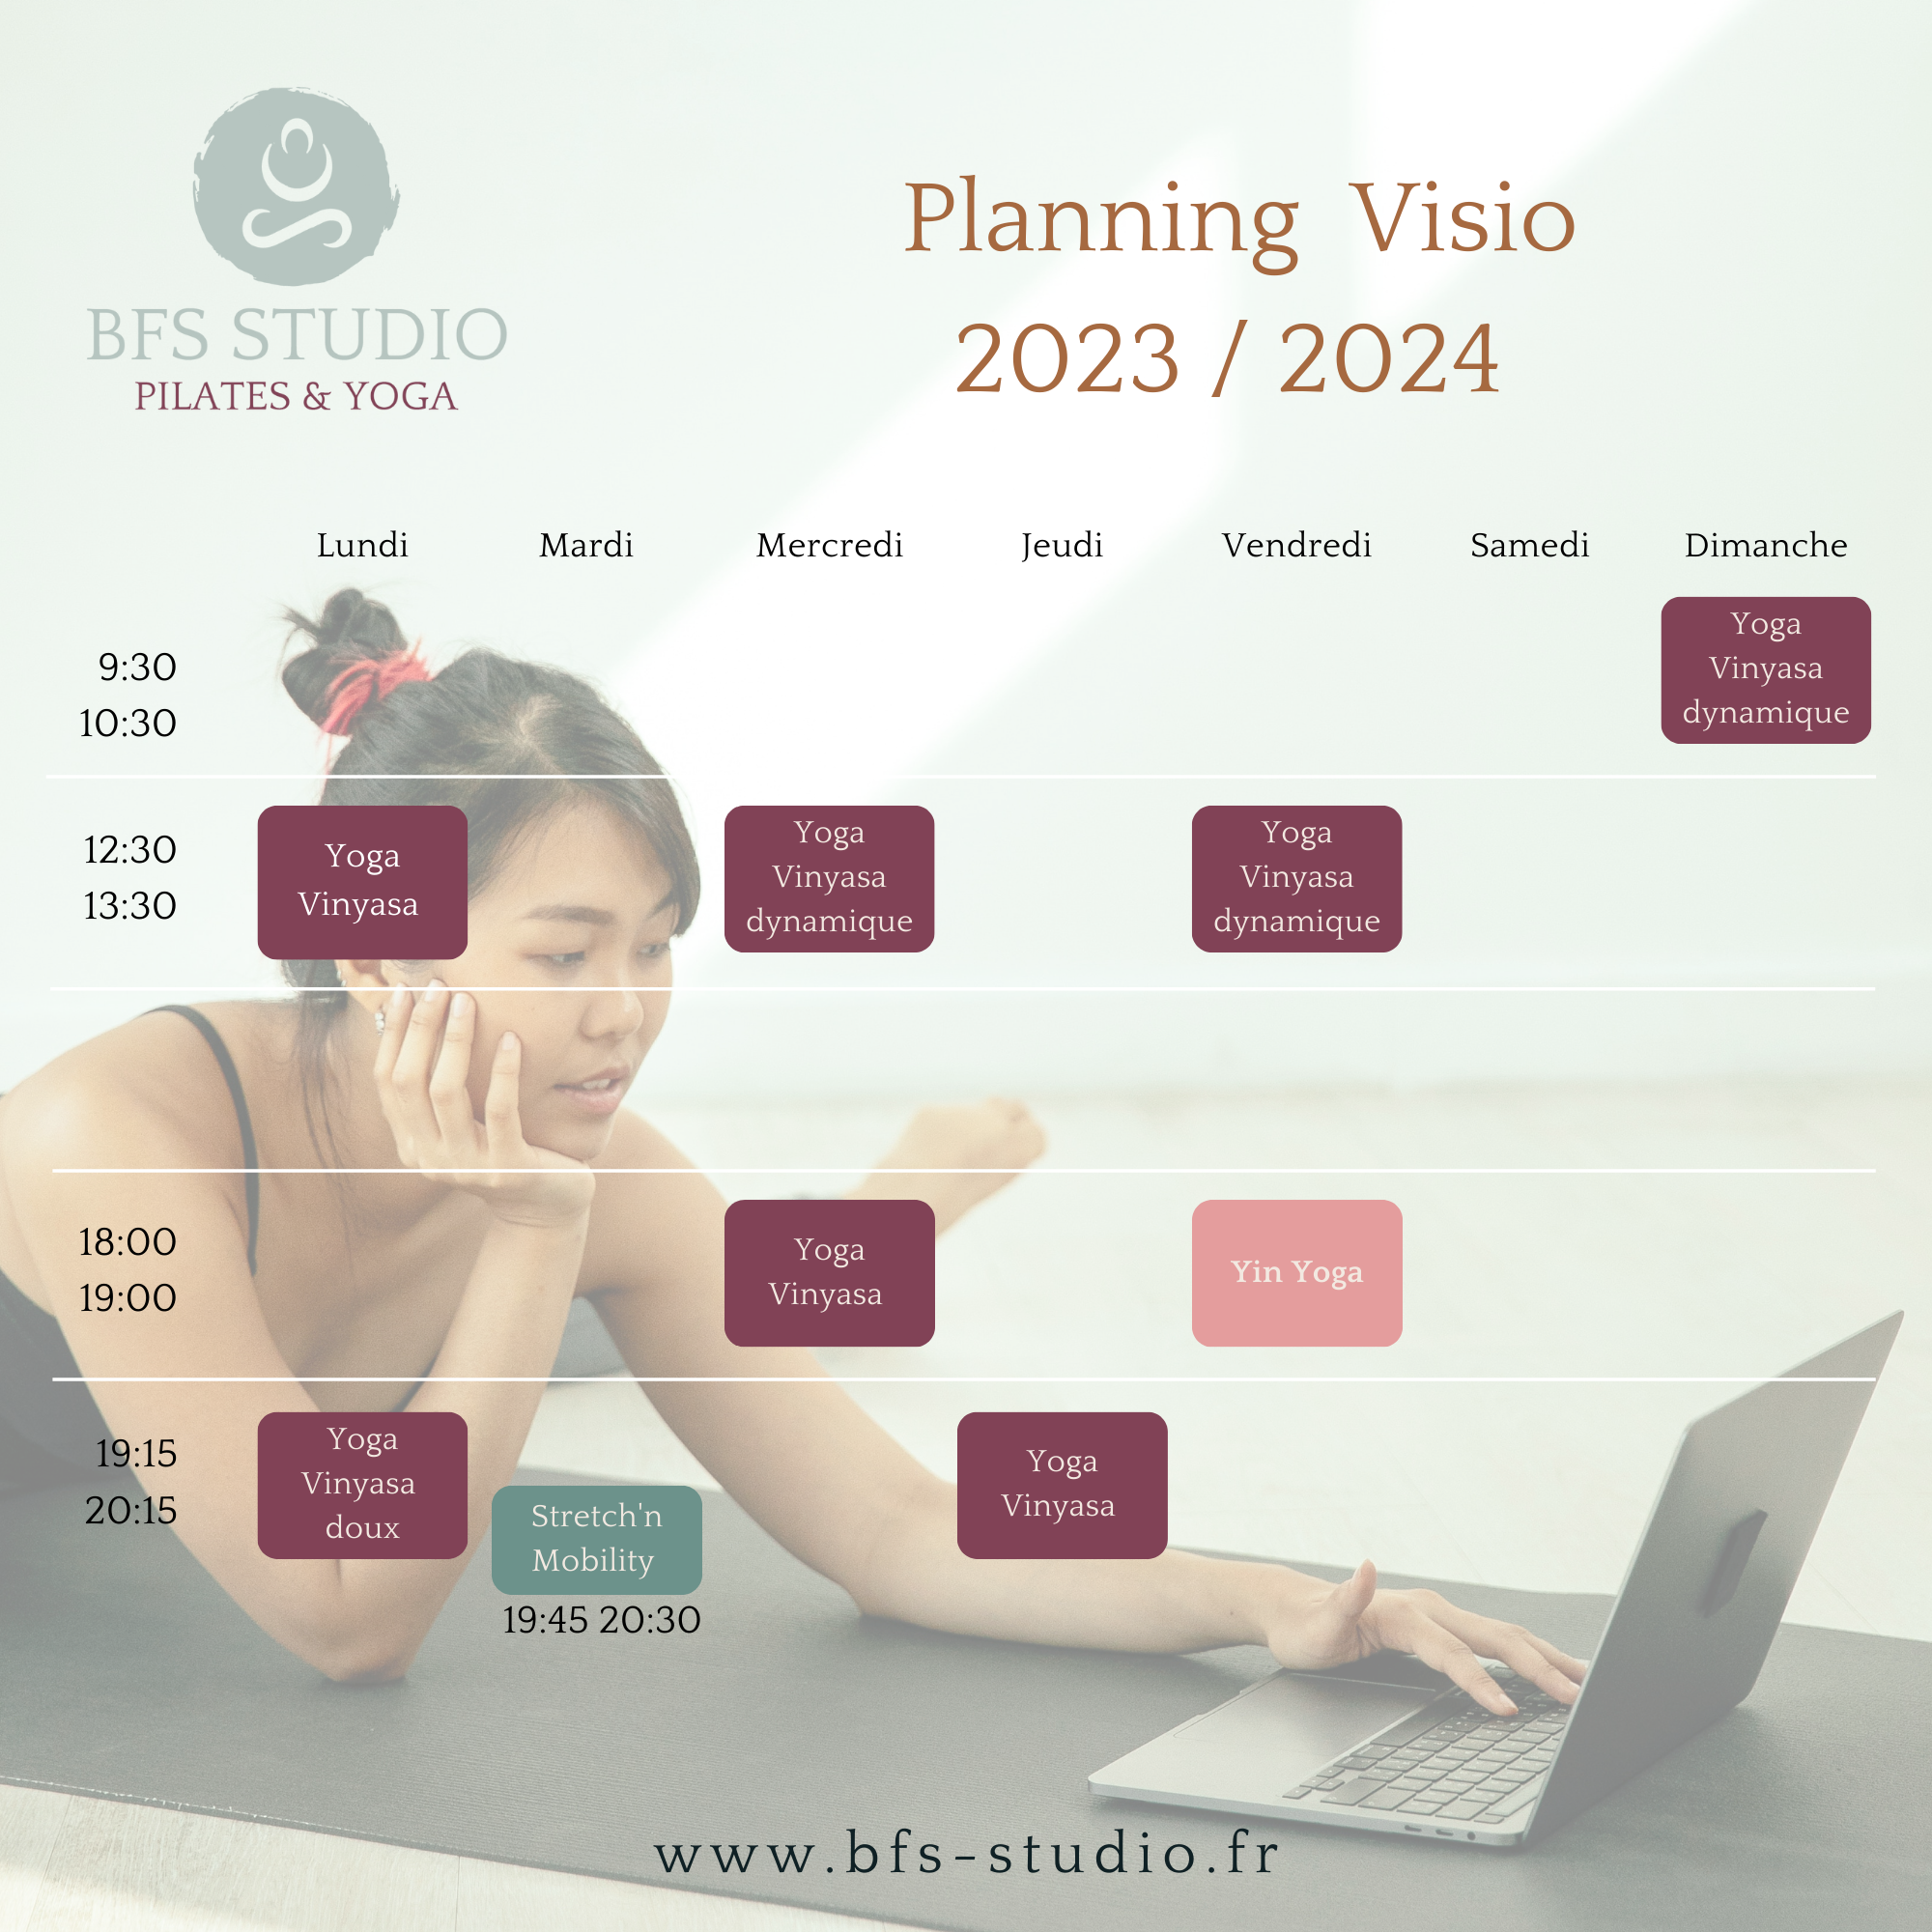 Planning des cours en visio du studio BFS - retrouvez le planning 2023/2024 de YOGA ET DE PILATES en visio